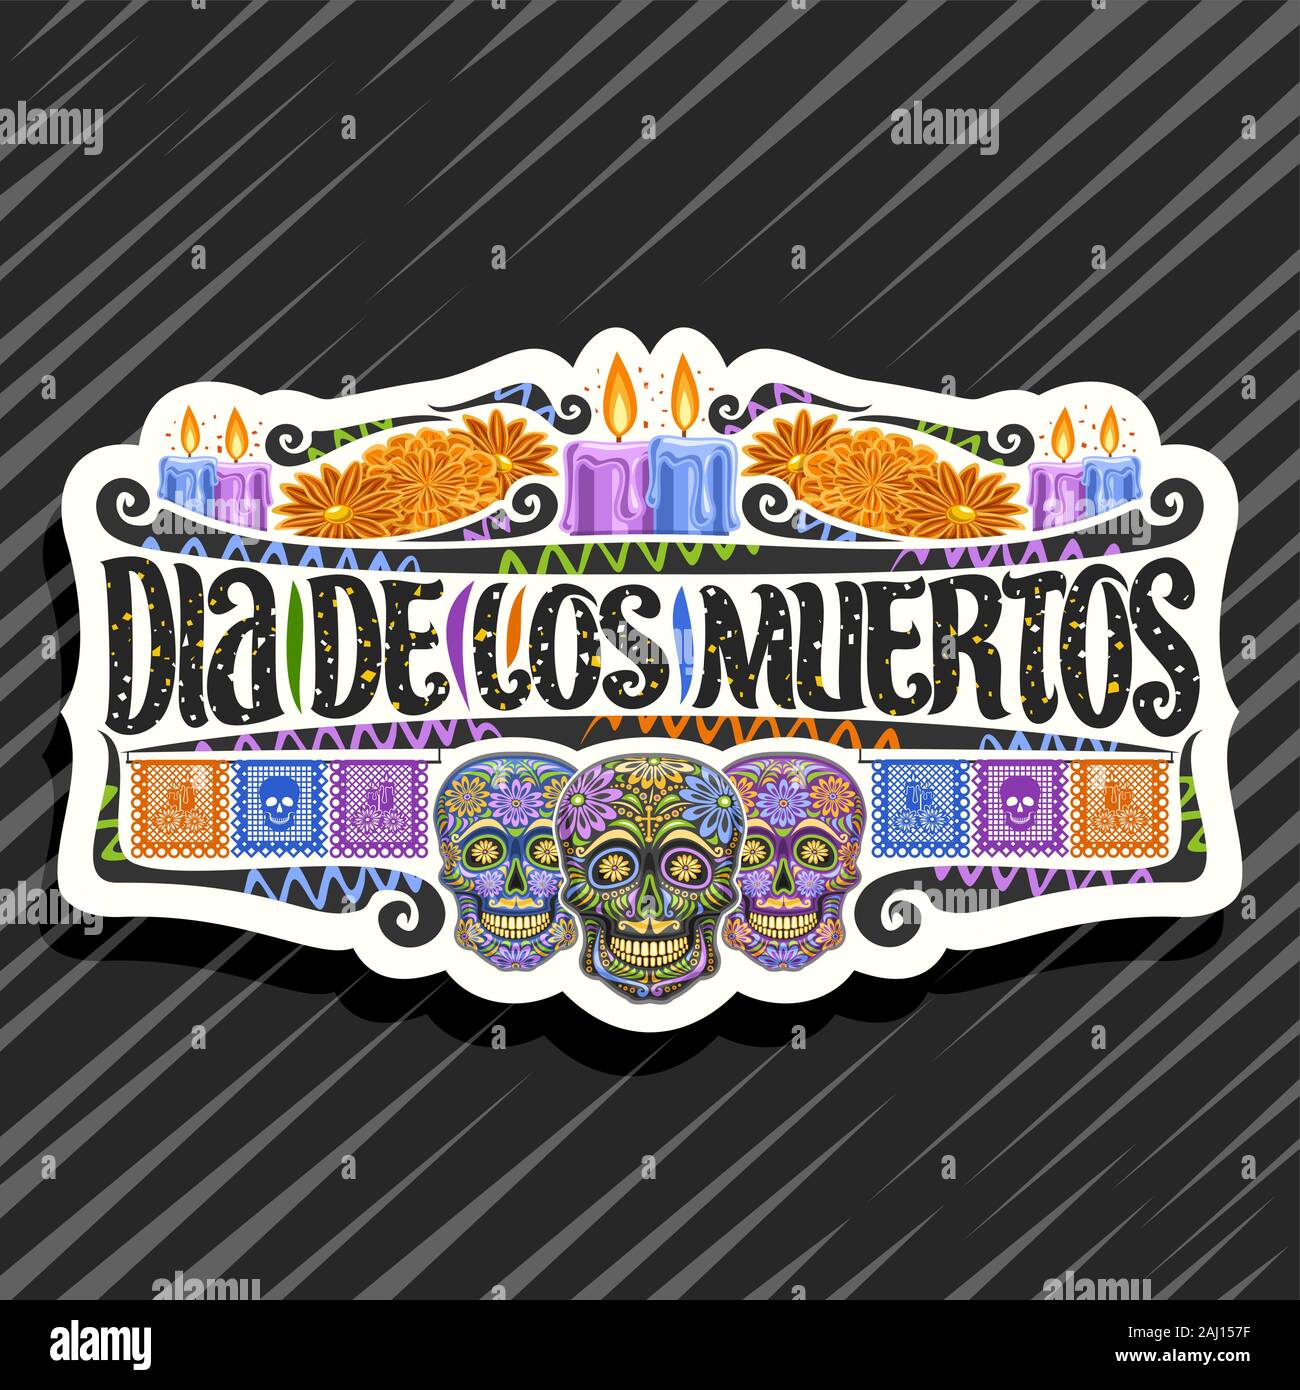 Vektor logo für Dia de los Muertos, weiß dekorative Sticker mit Abbildung: 3 gruselig Köpfe, brennende Kerzen, orange Blumen, bunten Gruß f Stock Vektor